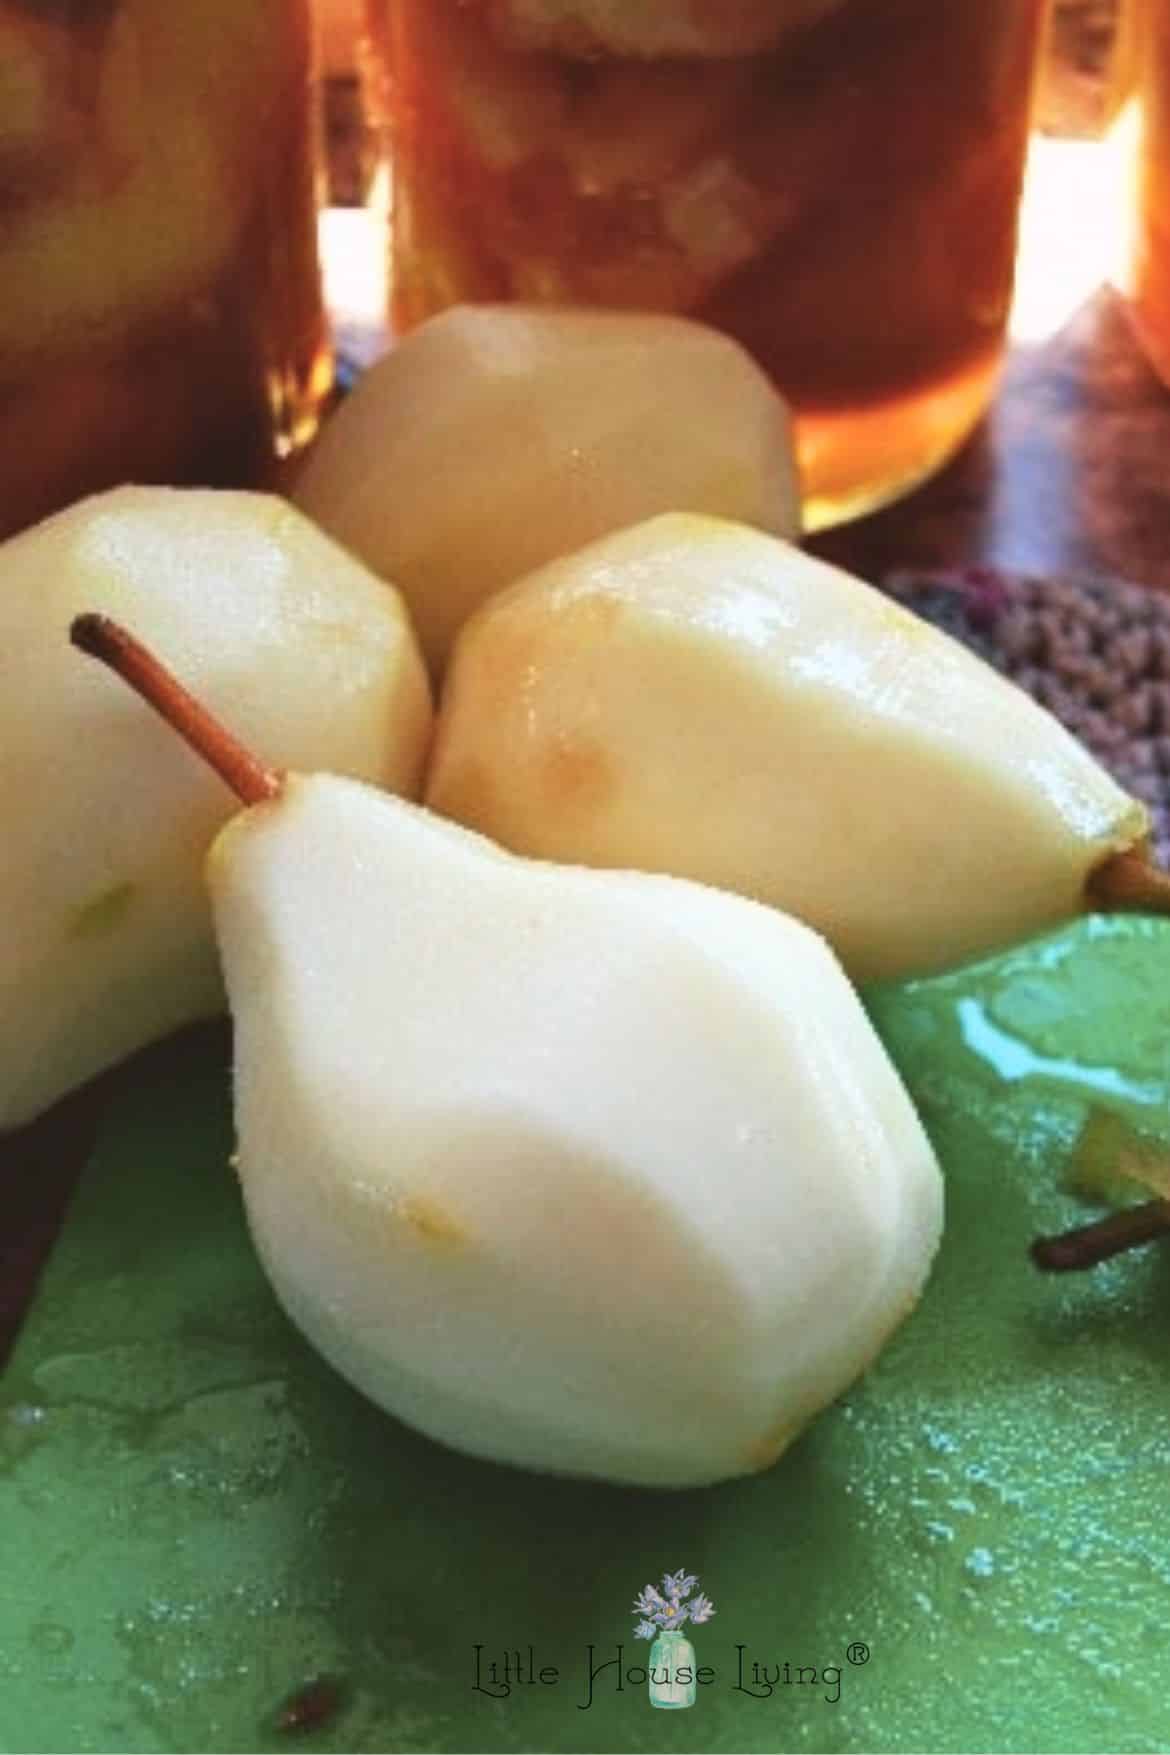 Peeled Pears